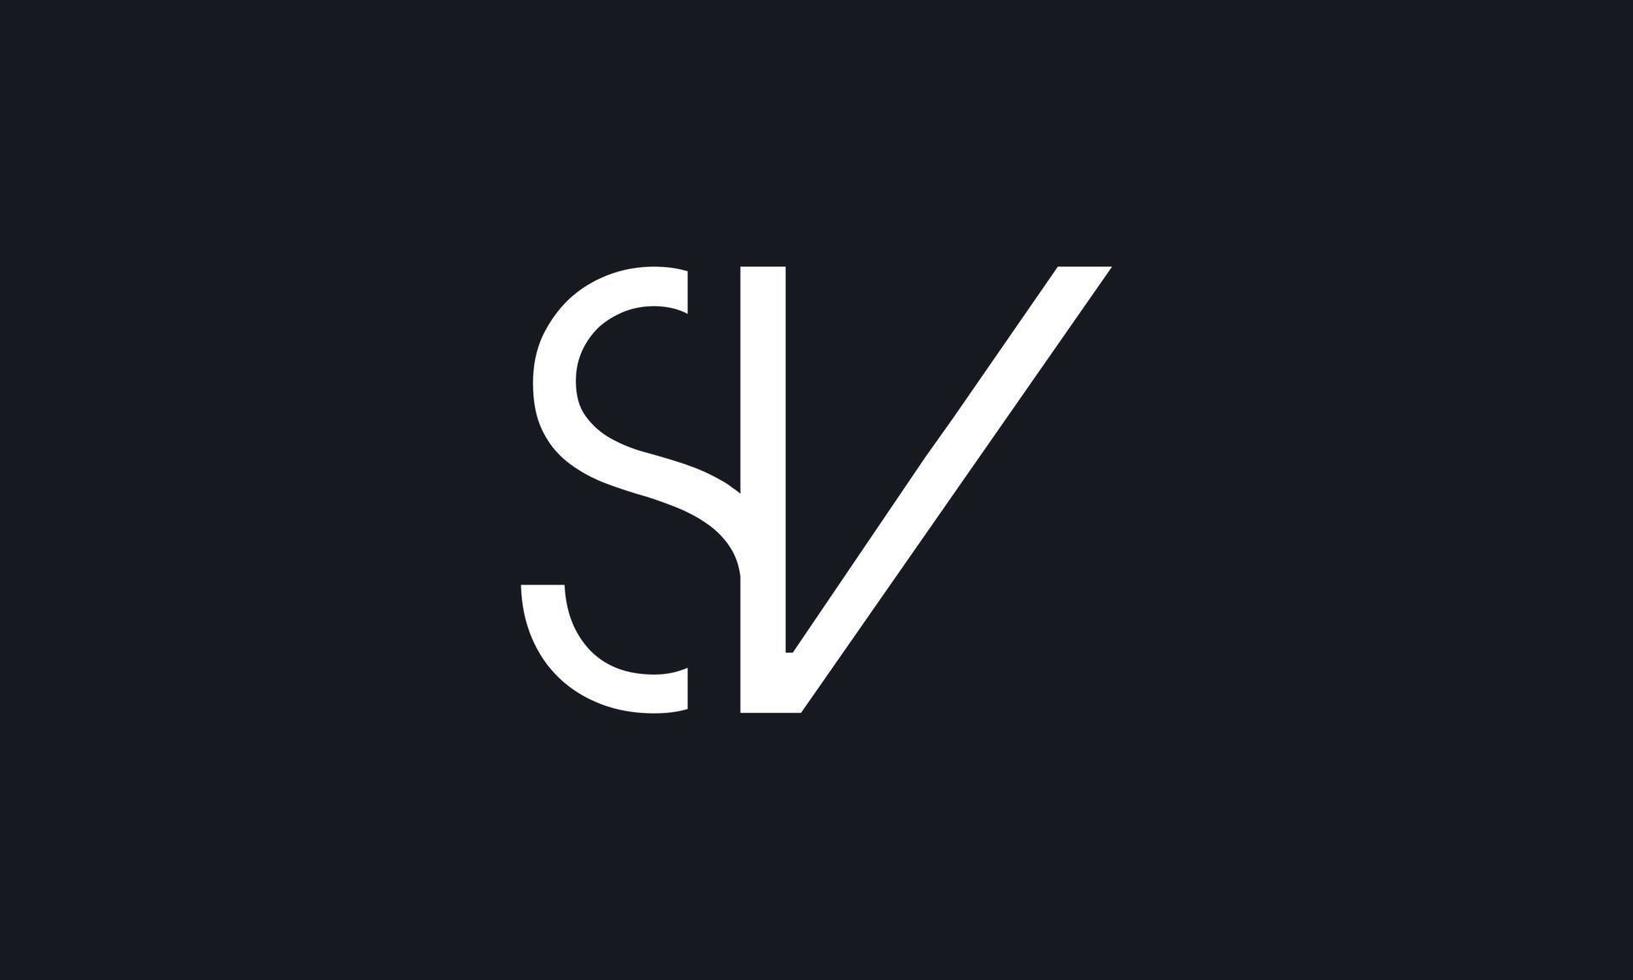 Buchstabe SV Logo Pro-Vektordatei Pro-Vektor Pro-Vektor vektor